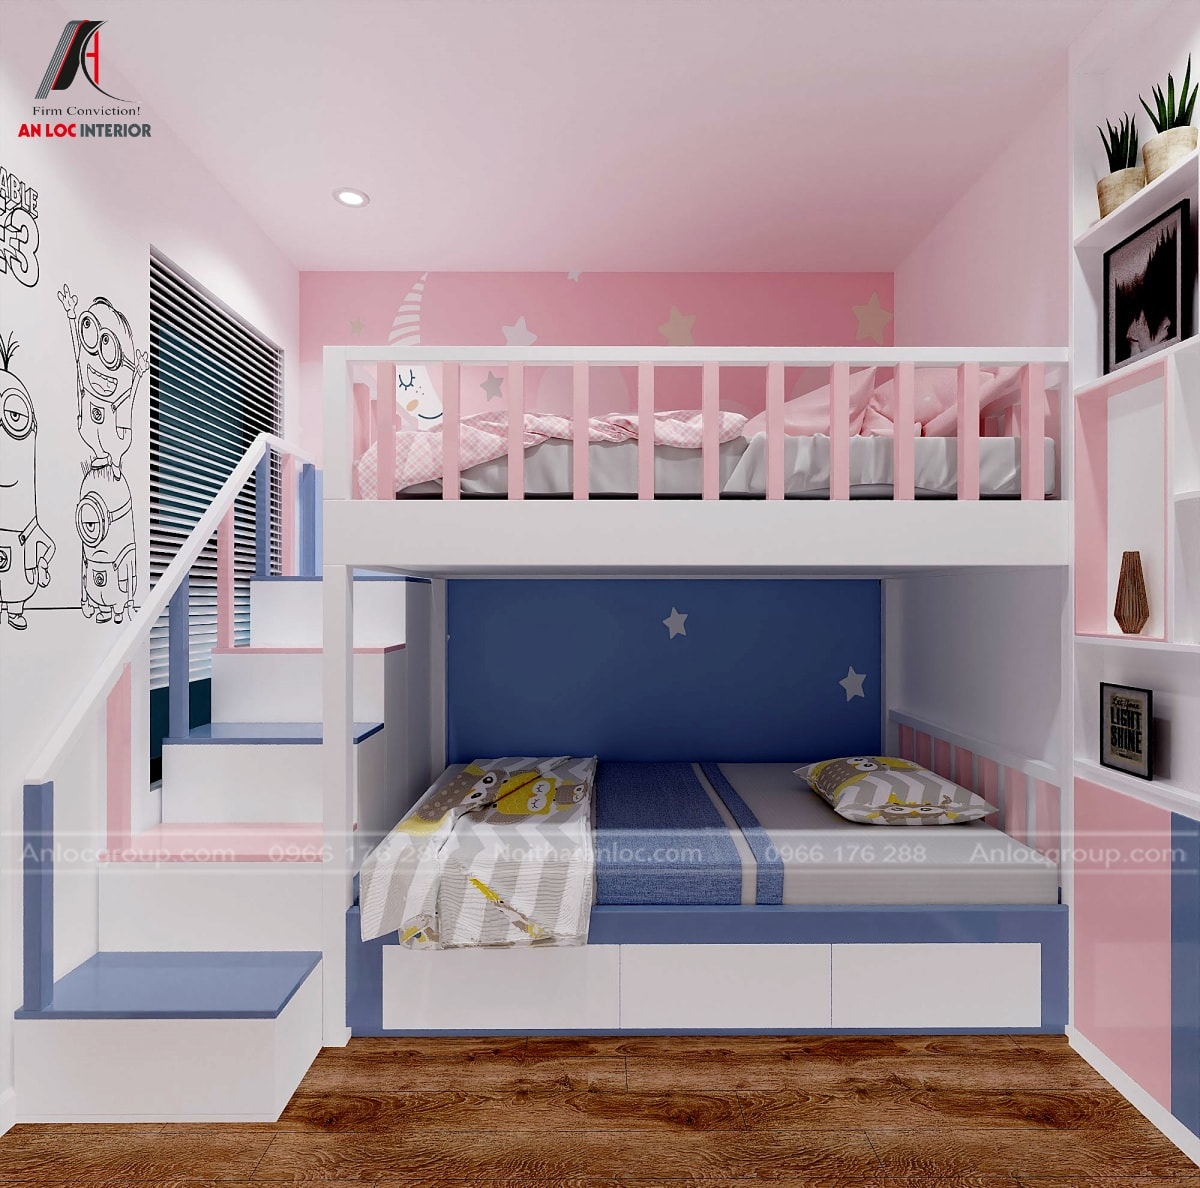 thiết kế phòng ngủ 2 giường